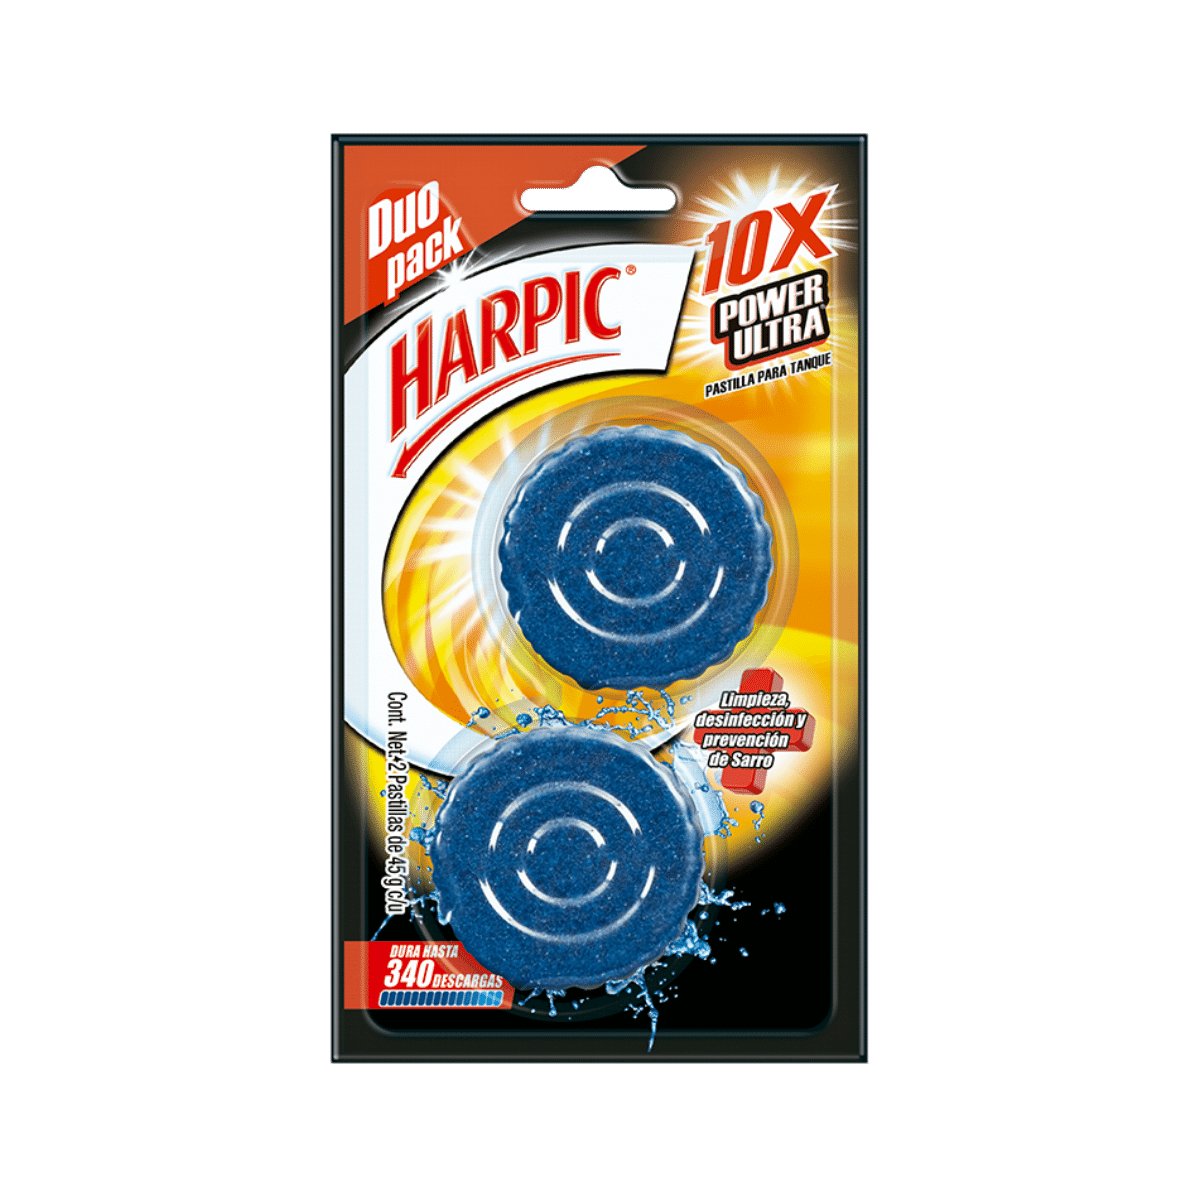 Harpic® Power Ultra® 10X Limpiador para inodoros - Karlan ¡Marca la Limpieza!RB-3032455